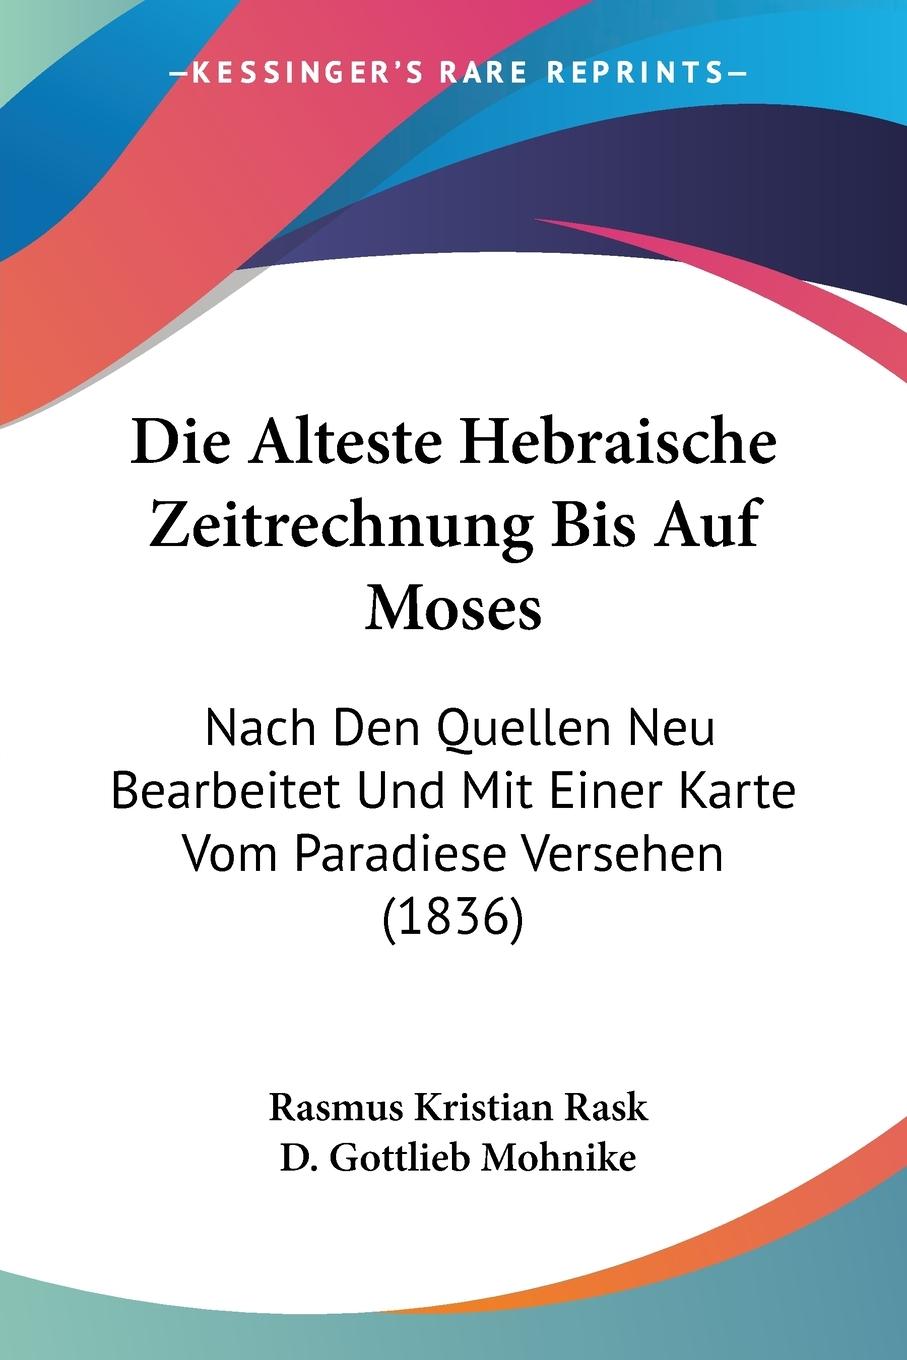 Die Alteste Hebraische Zeitrechnung Bis Auf Moses - Rask, Rasmus Kristian